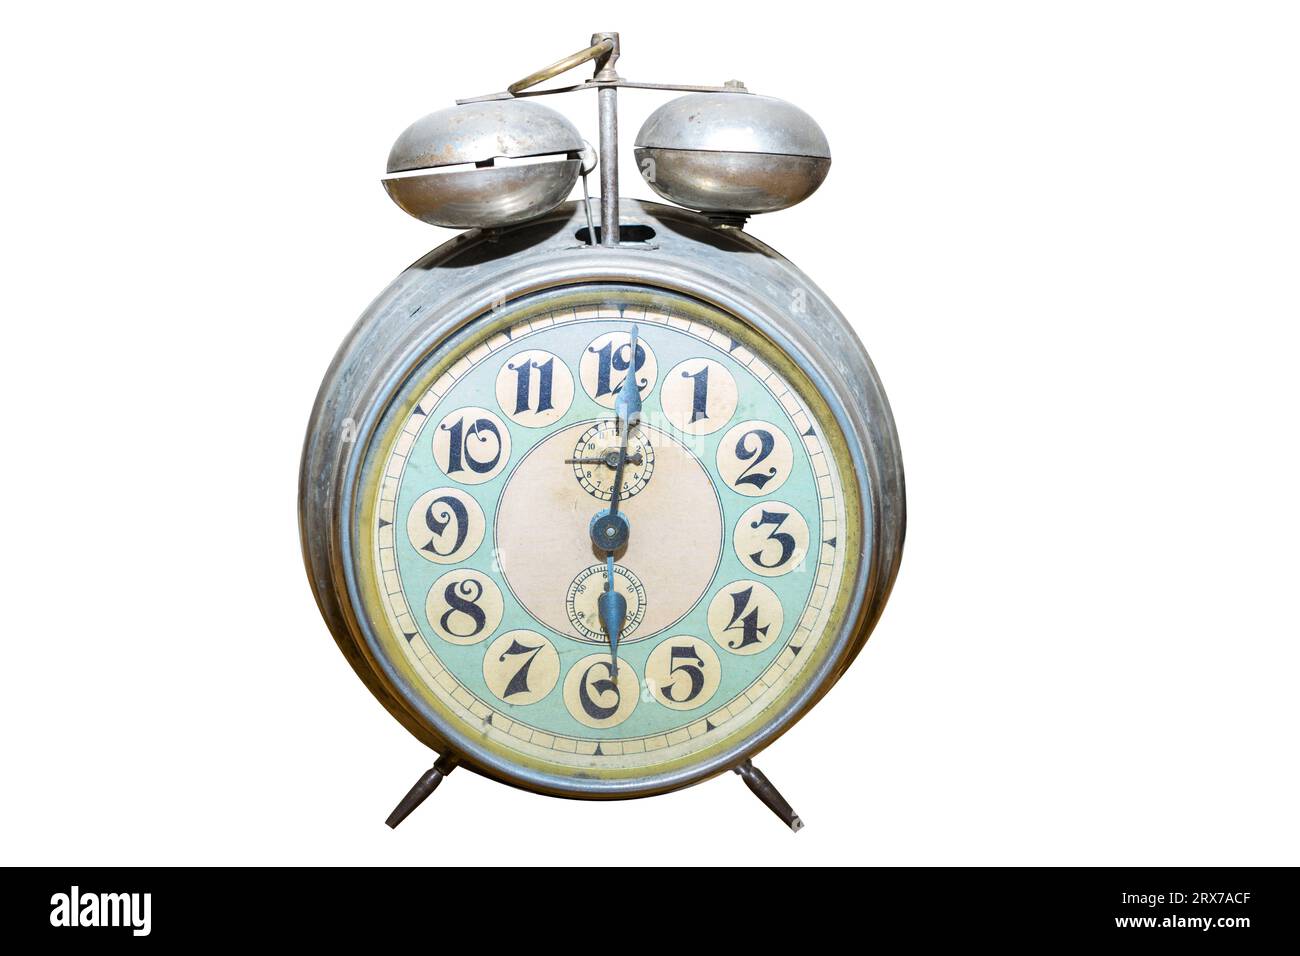 vintage alarm clock isolated on white background Stock Photo